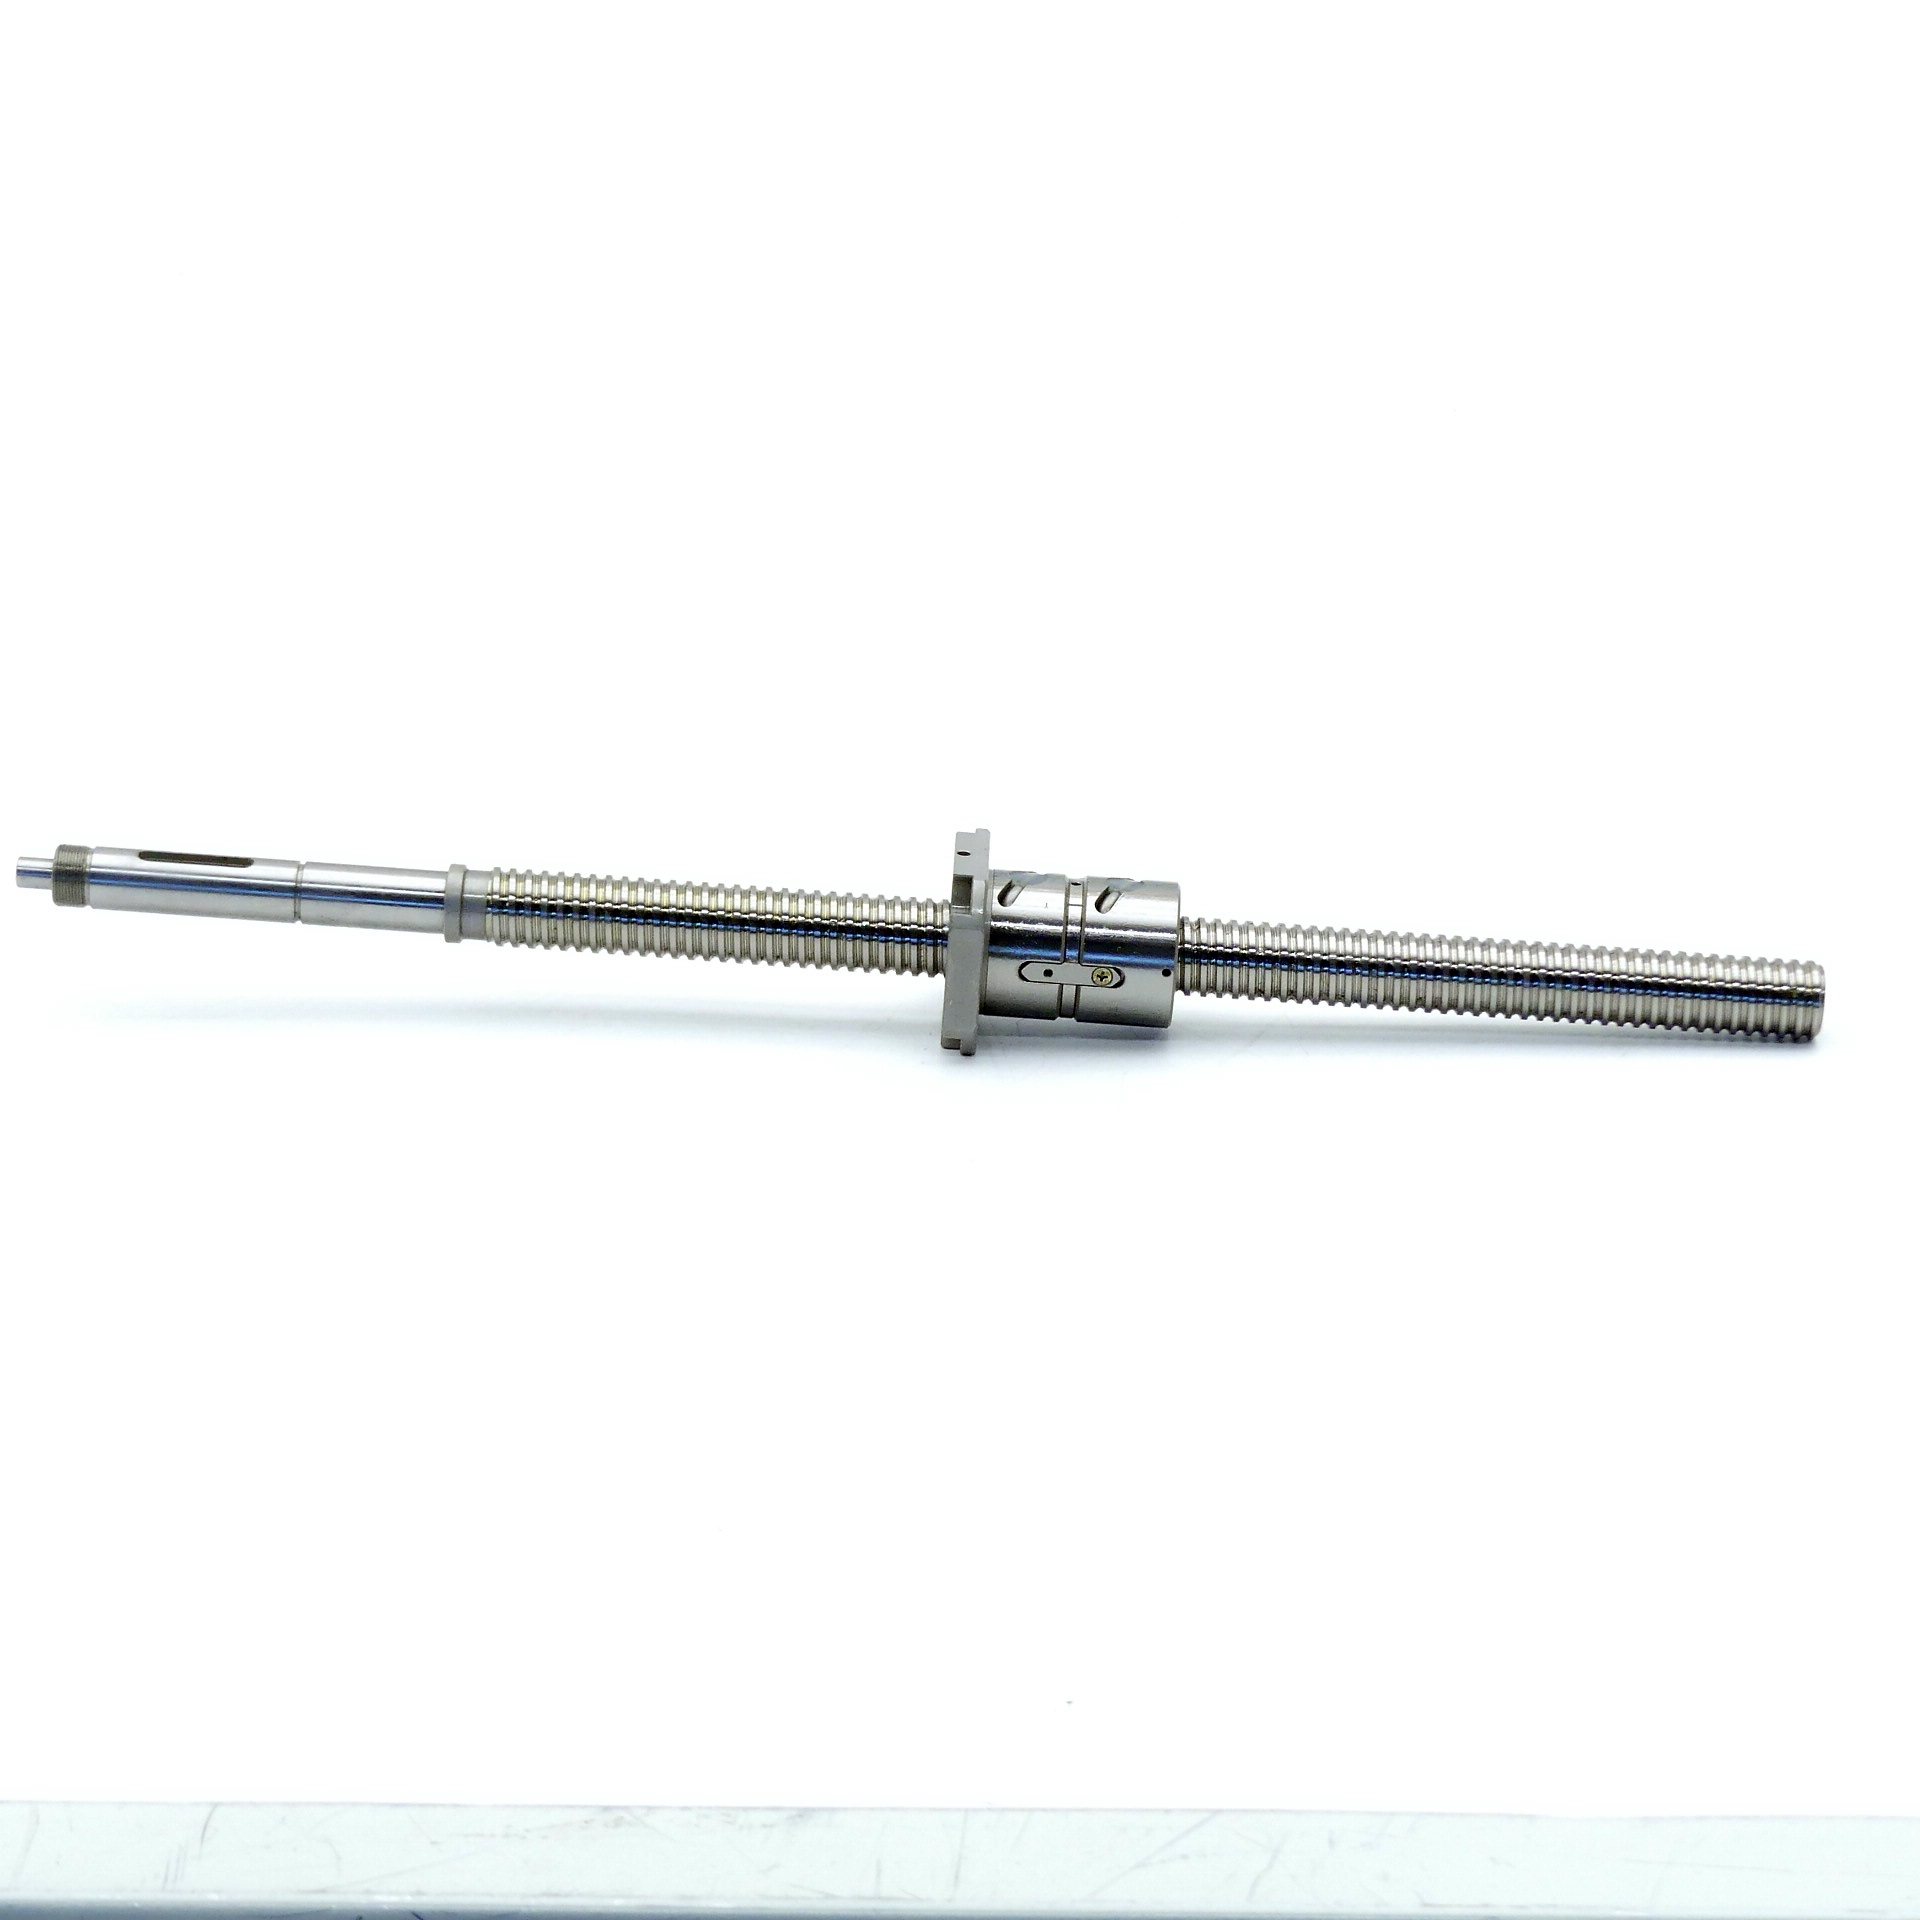 Lead screw 8SZ-008 